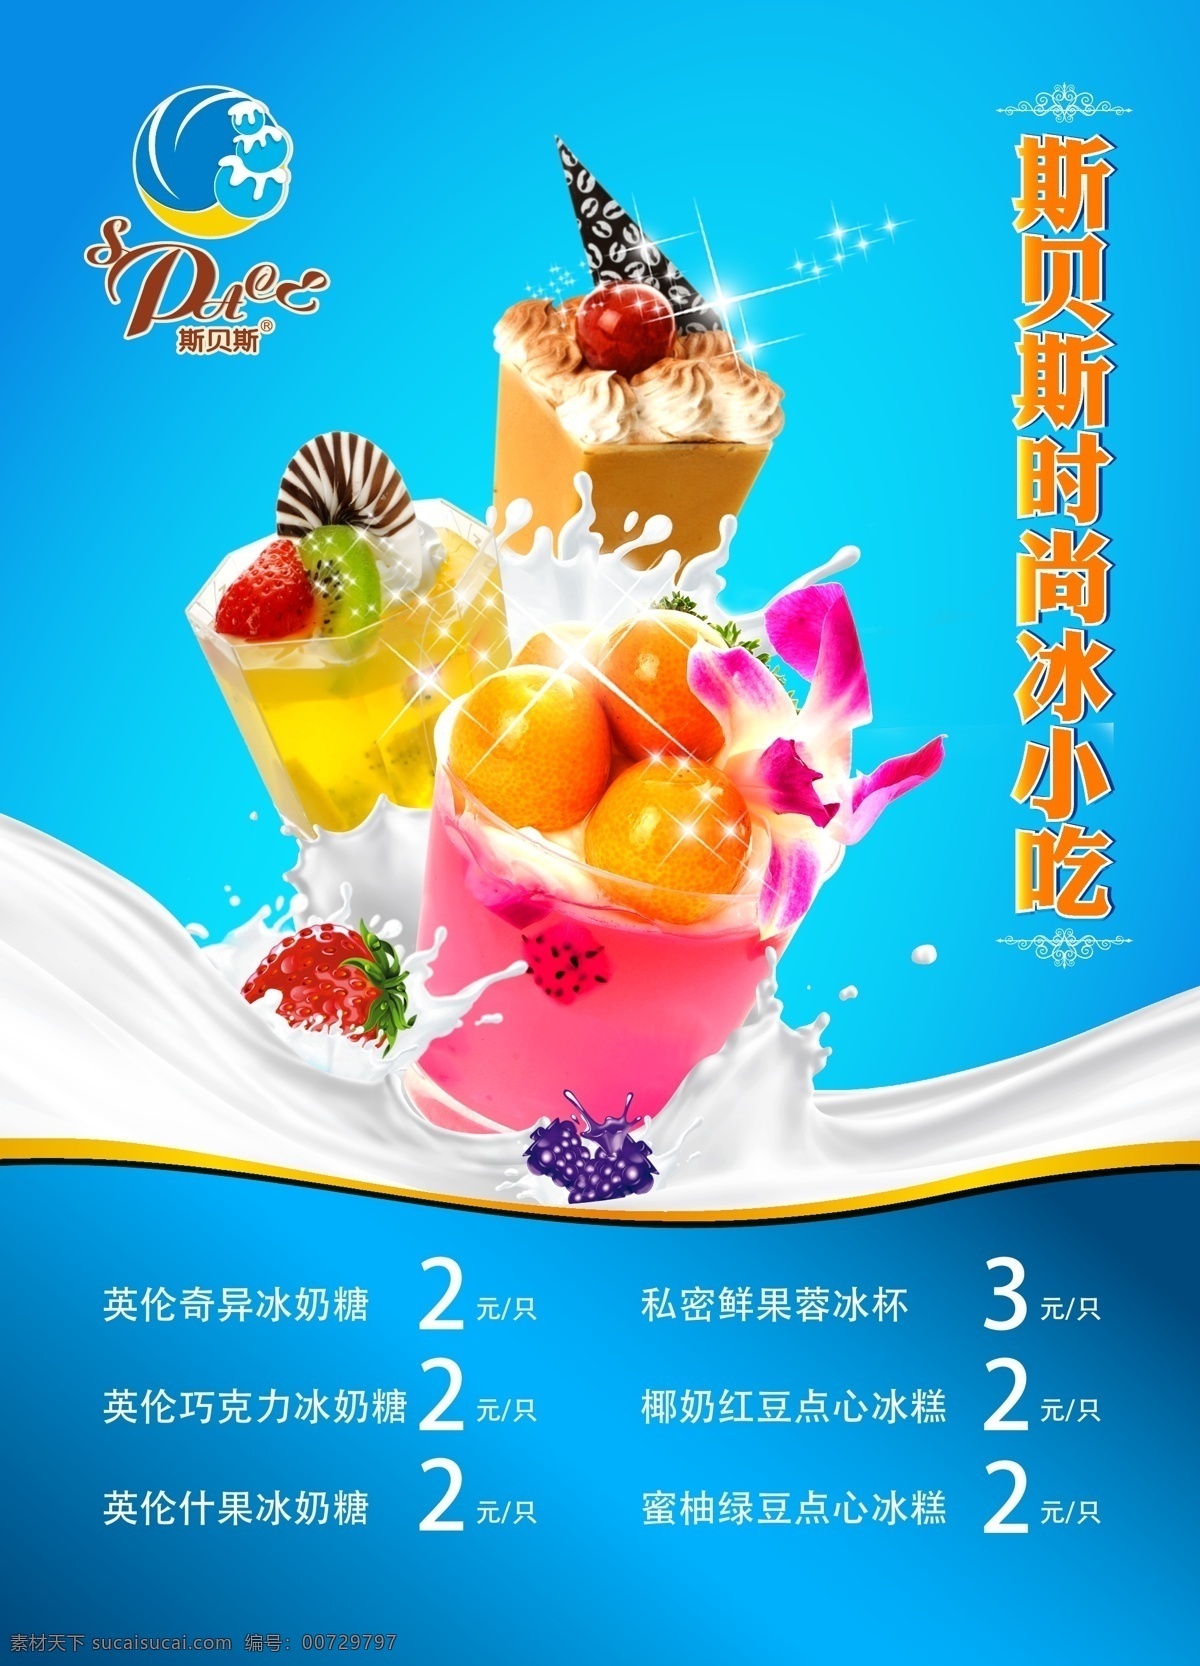 冰淇淋广告 冰淇淋宣传单 海报 台湾冰淇淋 花式冰淇淋 版面 冰淇淋制作 cdr矢量 矢量 白色